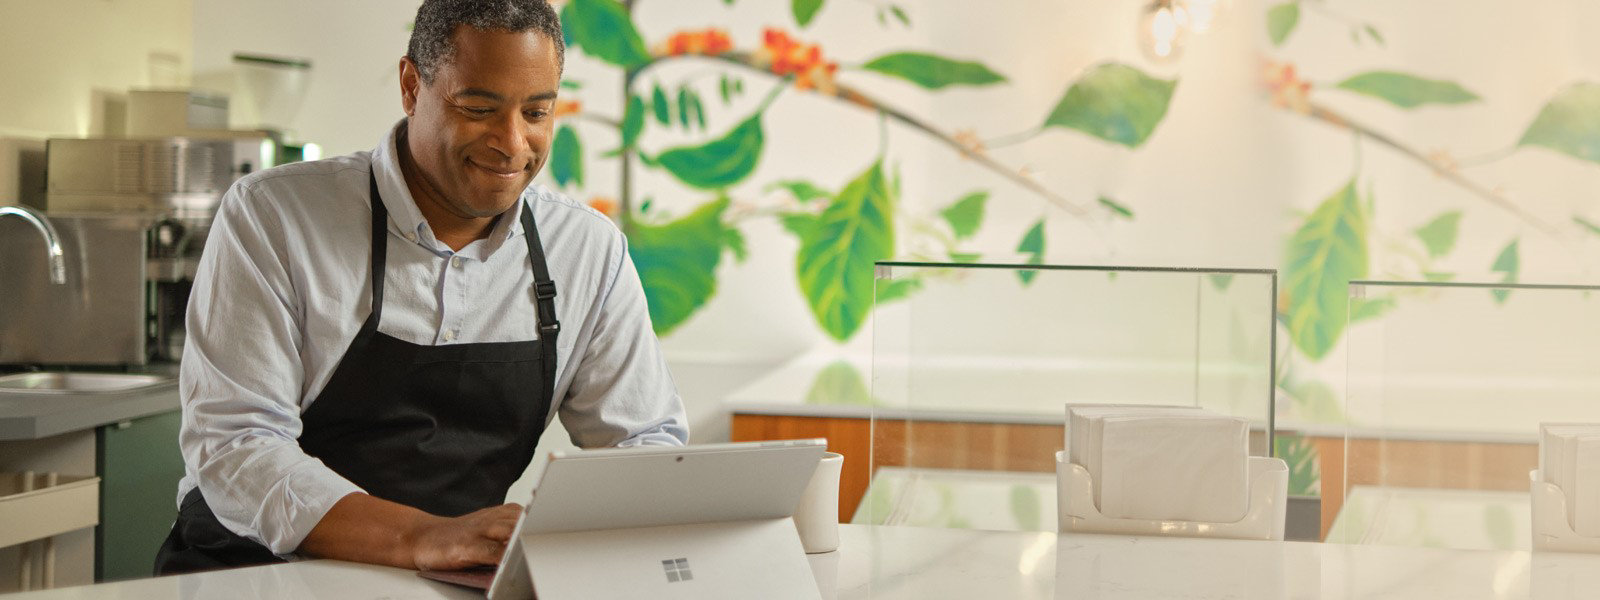 Egy férfi Surface Pro 7+ számítógépen dolgozik az éttermében